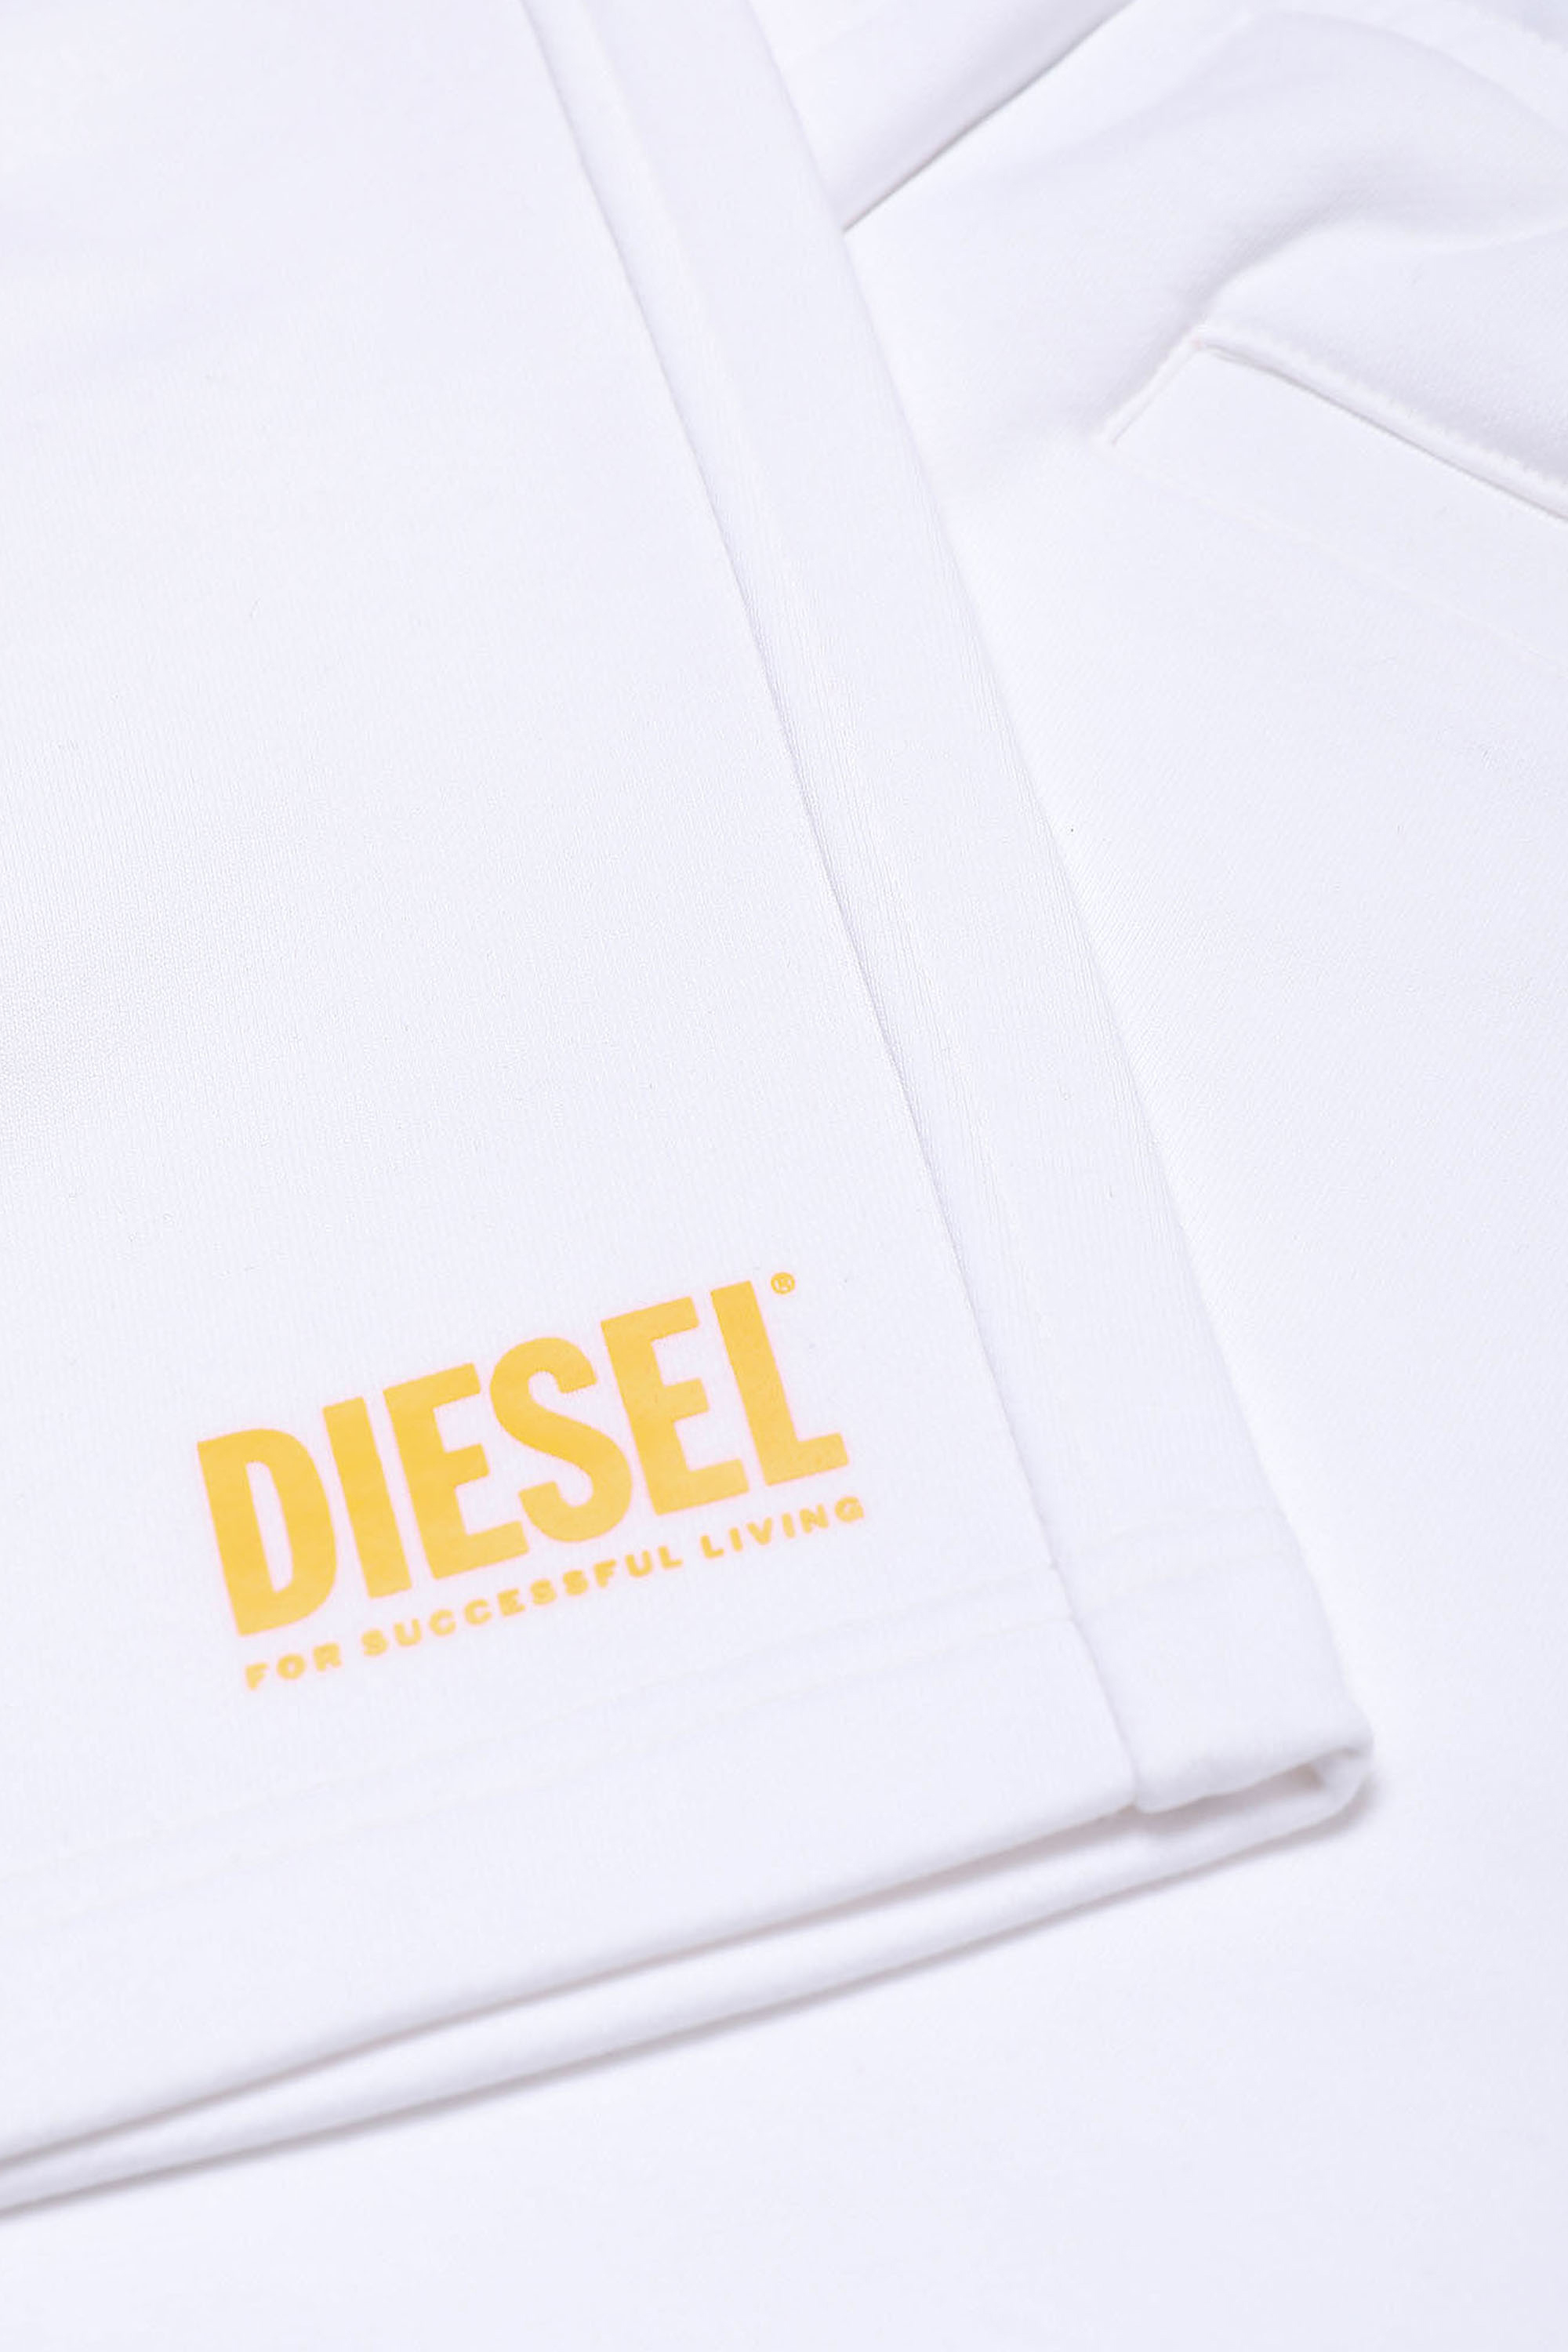 Diesel - PCROWN, Blanc - Image 3